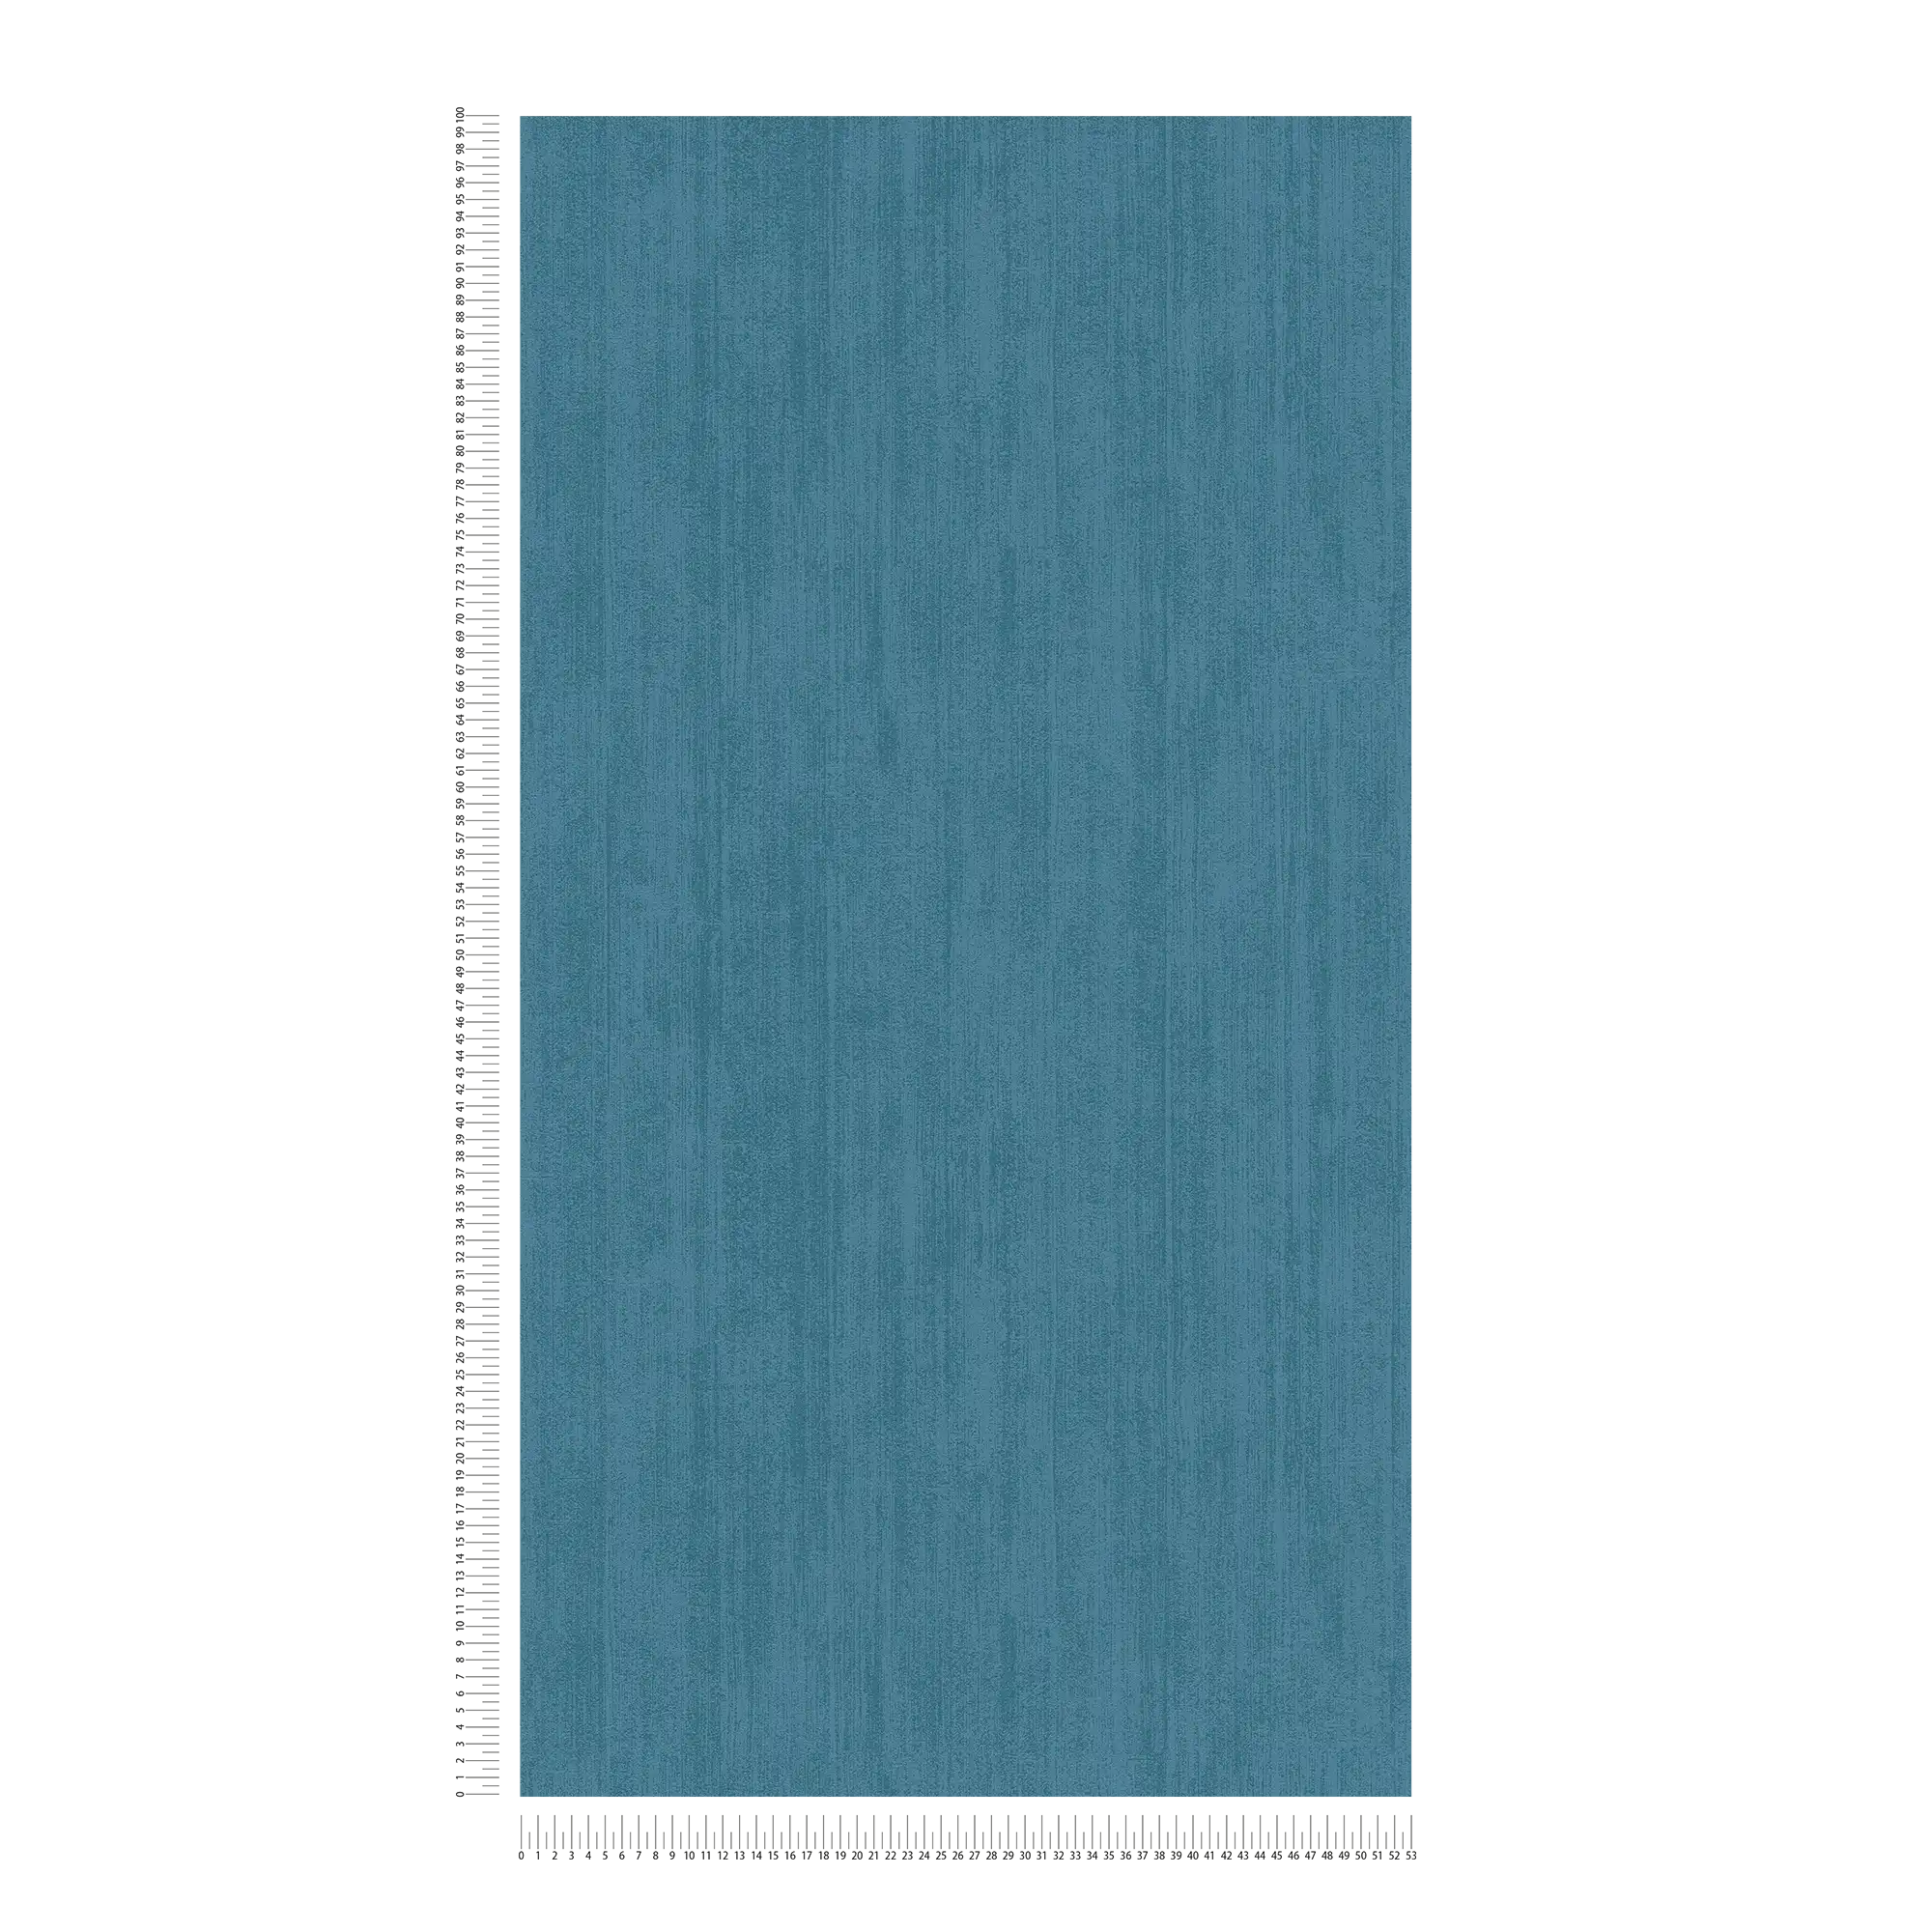             Papel pintado liso no tejido con sombreado tono sobre tono - azul
        